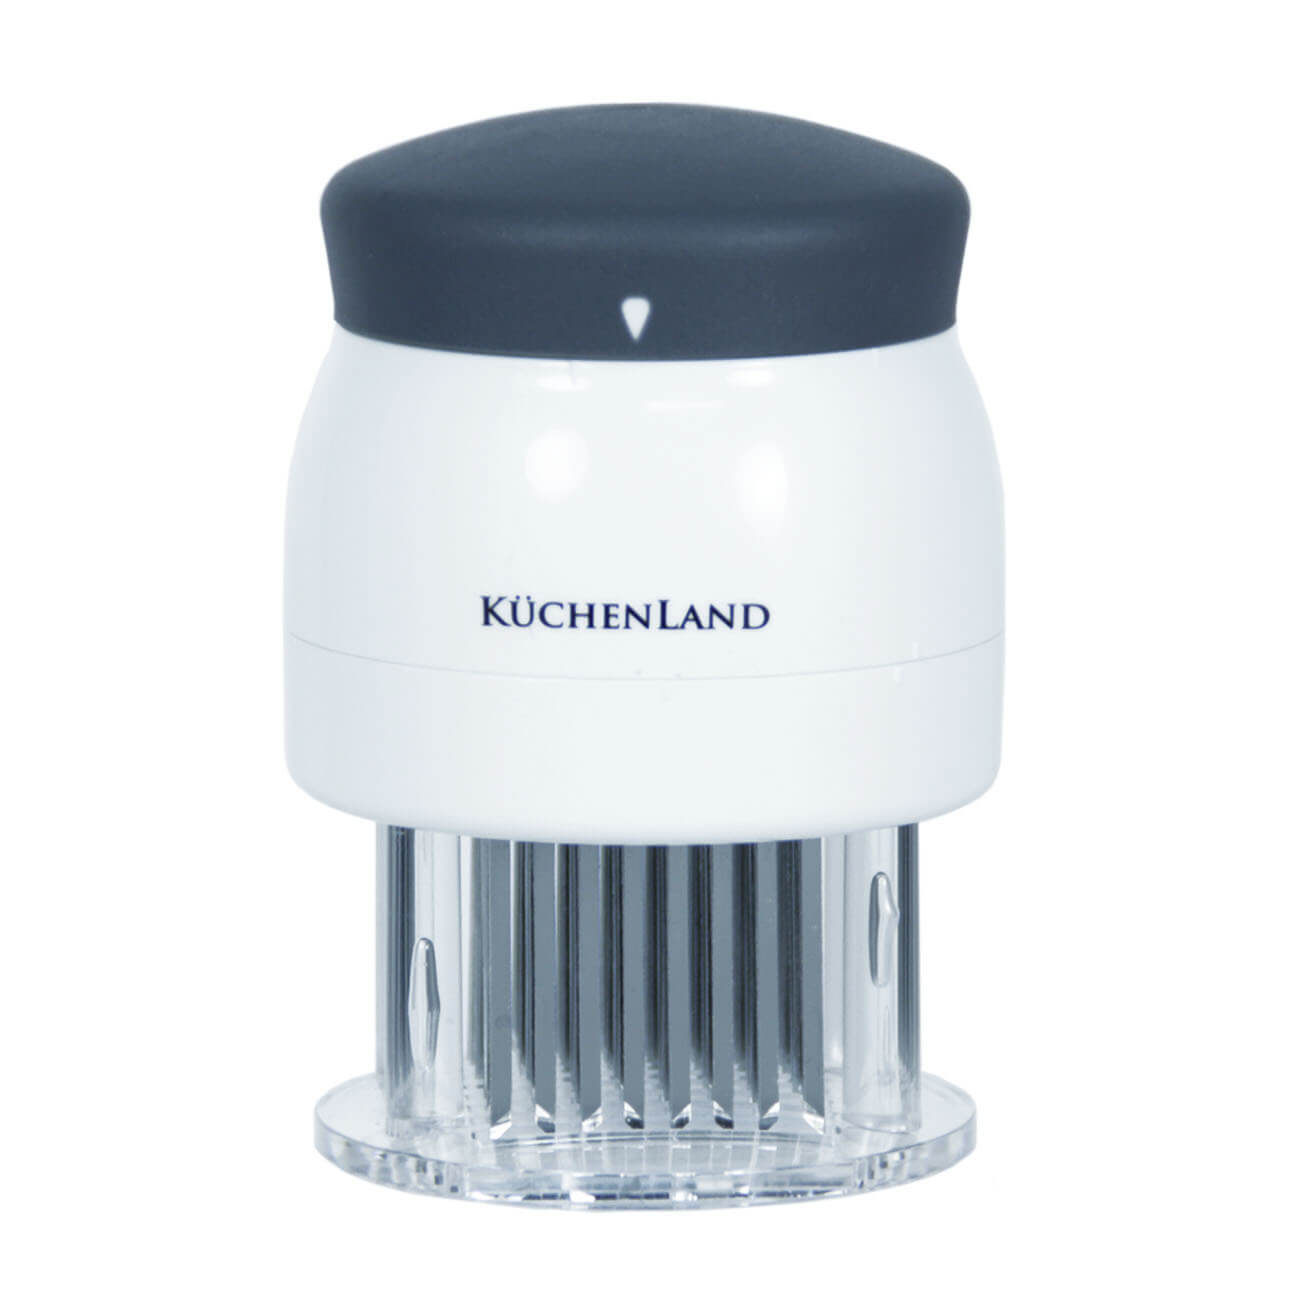 Kuchenland Тендерайзер, 8х11 см, 72 лезвия, сталь/пластик, белый, Grinding сегментные лезвия hardy